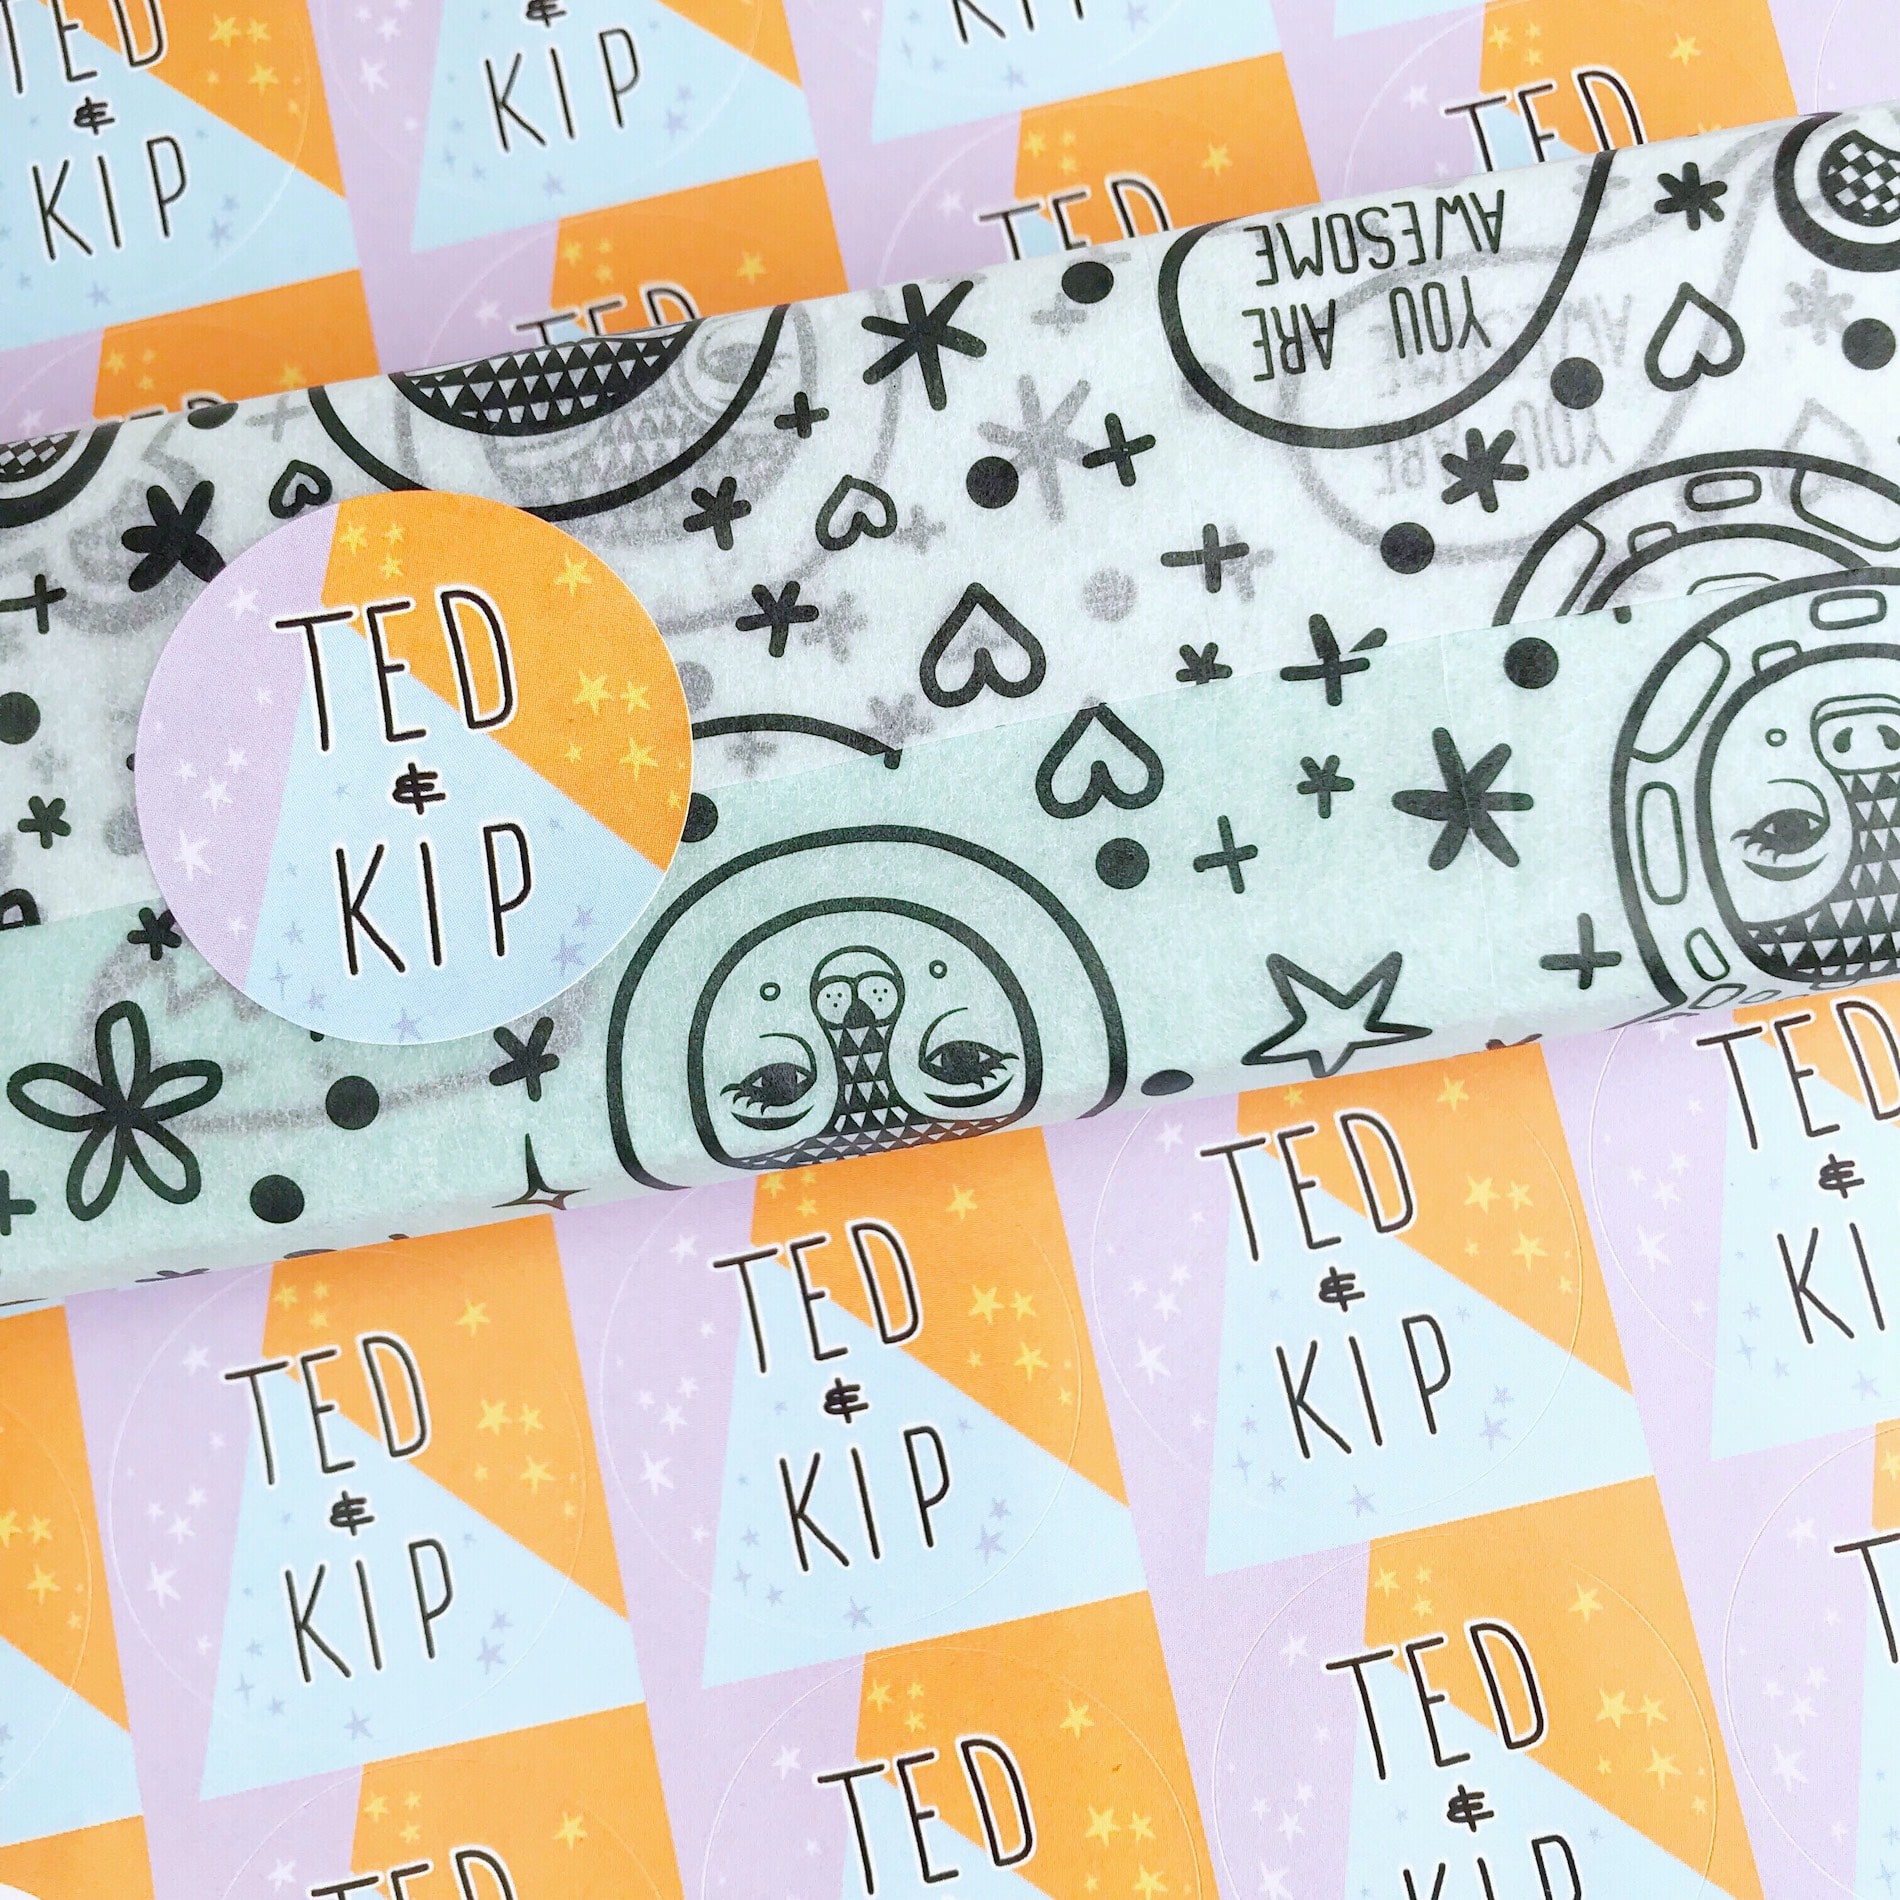 Ted & Kip custom tissue paper and custom sticker